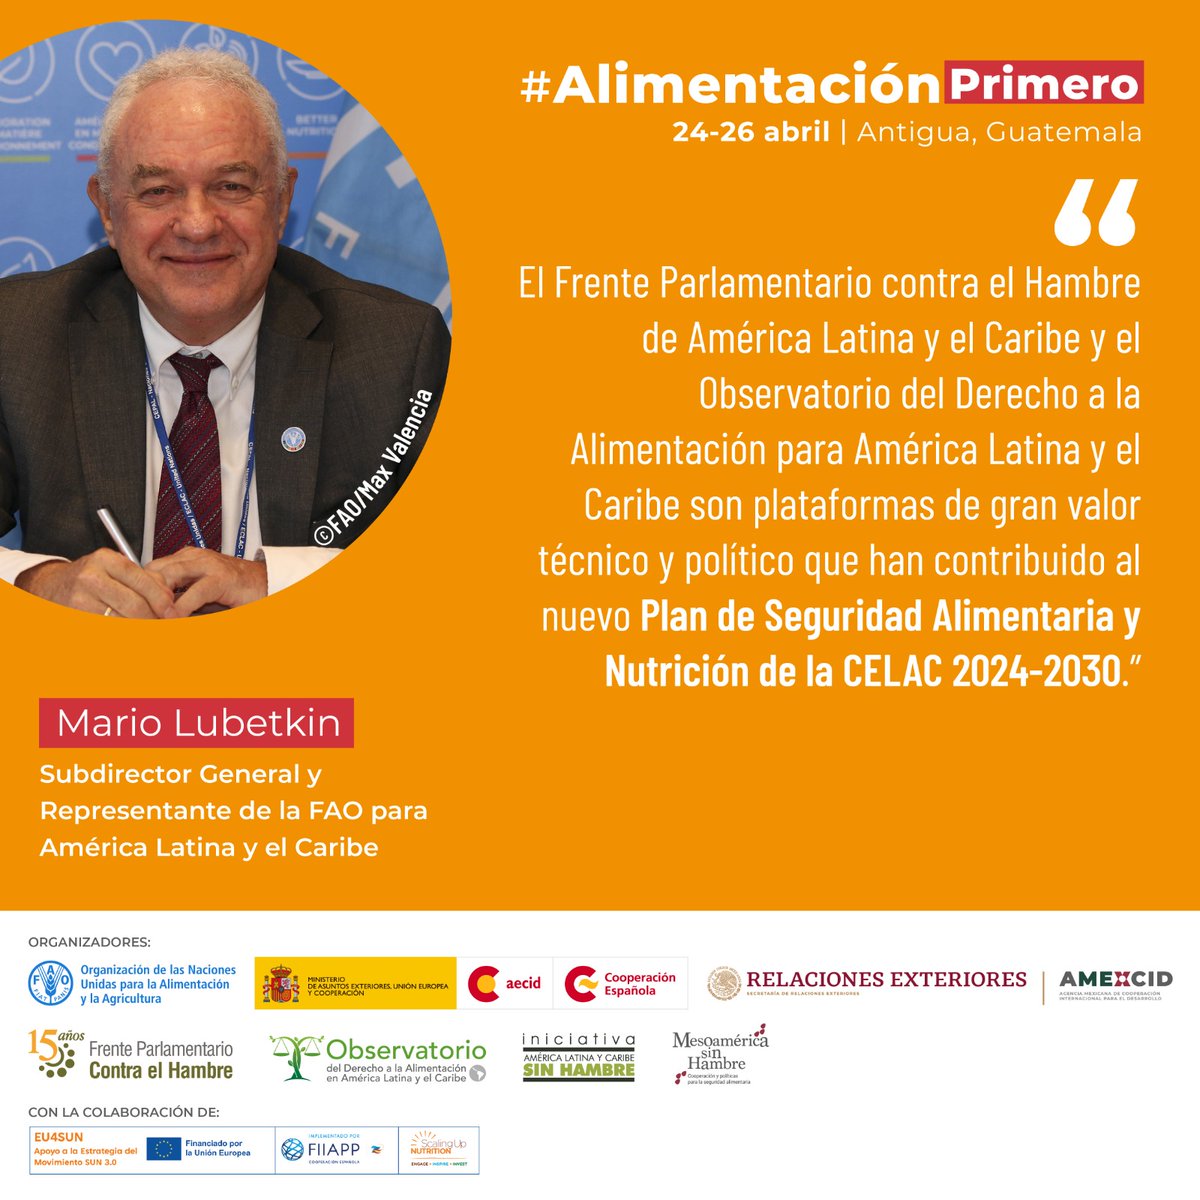 @AECID_es @CooperacionESP @FAO @FAOAmericas @Senadoesp @LuisLoboG @AMEXCID @FIIAPP @SoniaRojasCR @jajofd @barbaravillarla @FAOenEspanol @FAOGuatemala @Aecid_Guatemala @CFCEAntigua ⭕️@MLubetkinFAO de @FAOAmericas participó en #AlimentaciónPrimero 👉Advirtió que el hambre es una realidad para millones y que urge más que nunca avanzar con determinación hacia sistemas agroalimentarios más sostenibles que impacten positivamente en las personas y el planeta